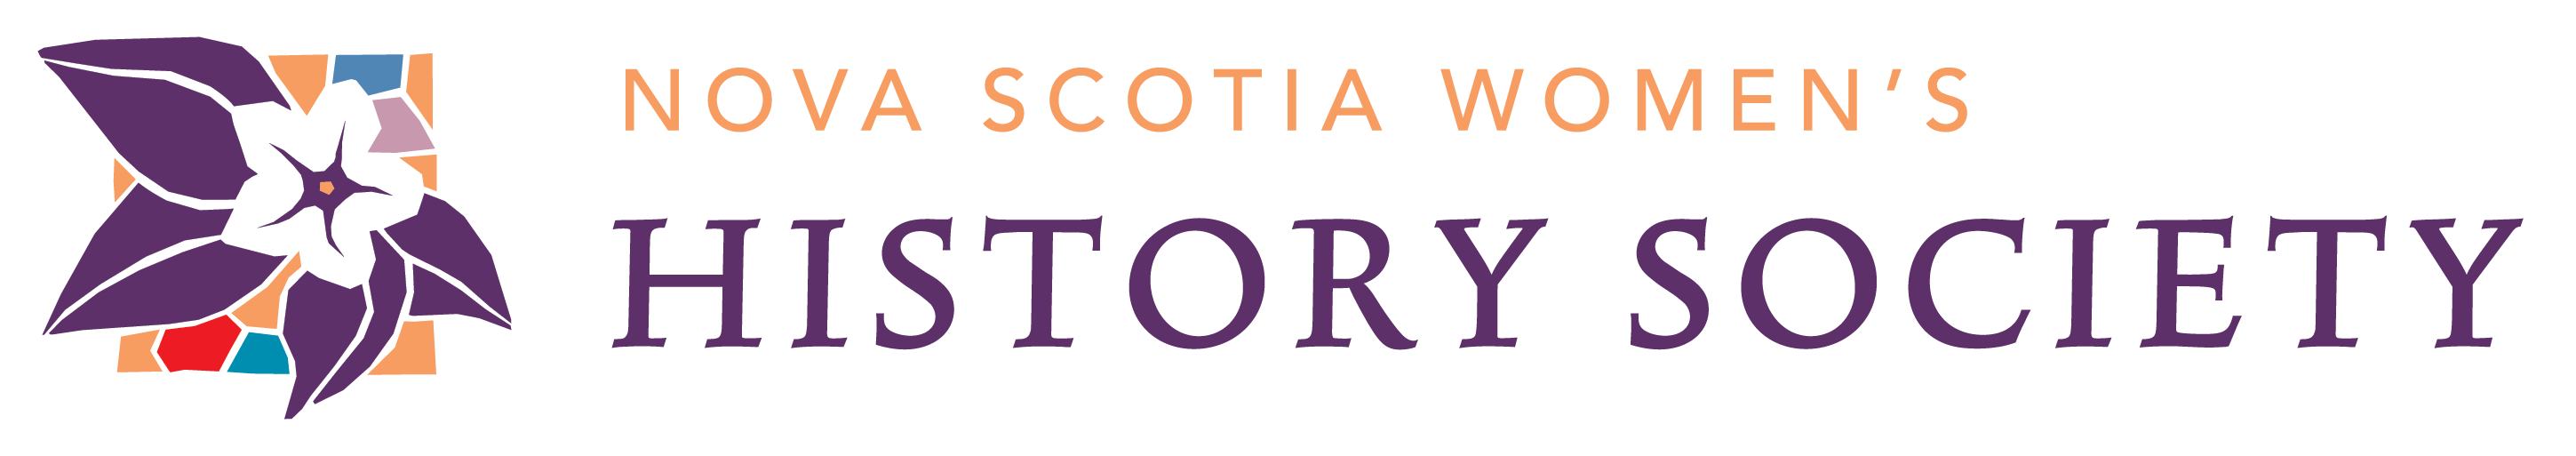 Nova Scotia Women's History Society